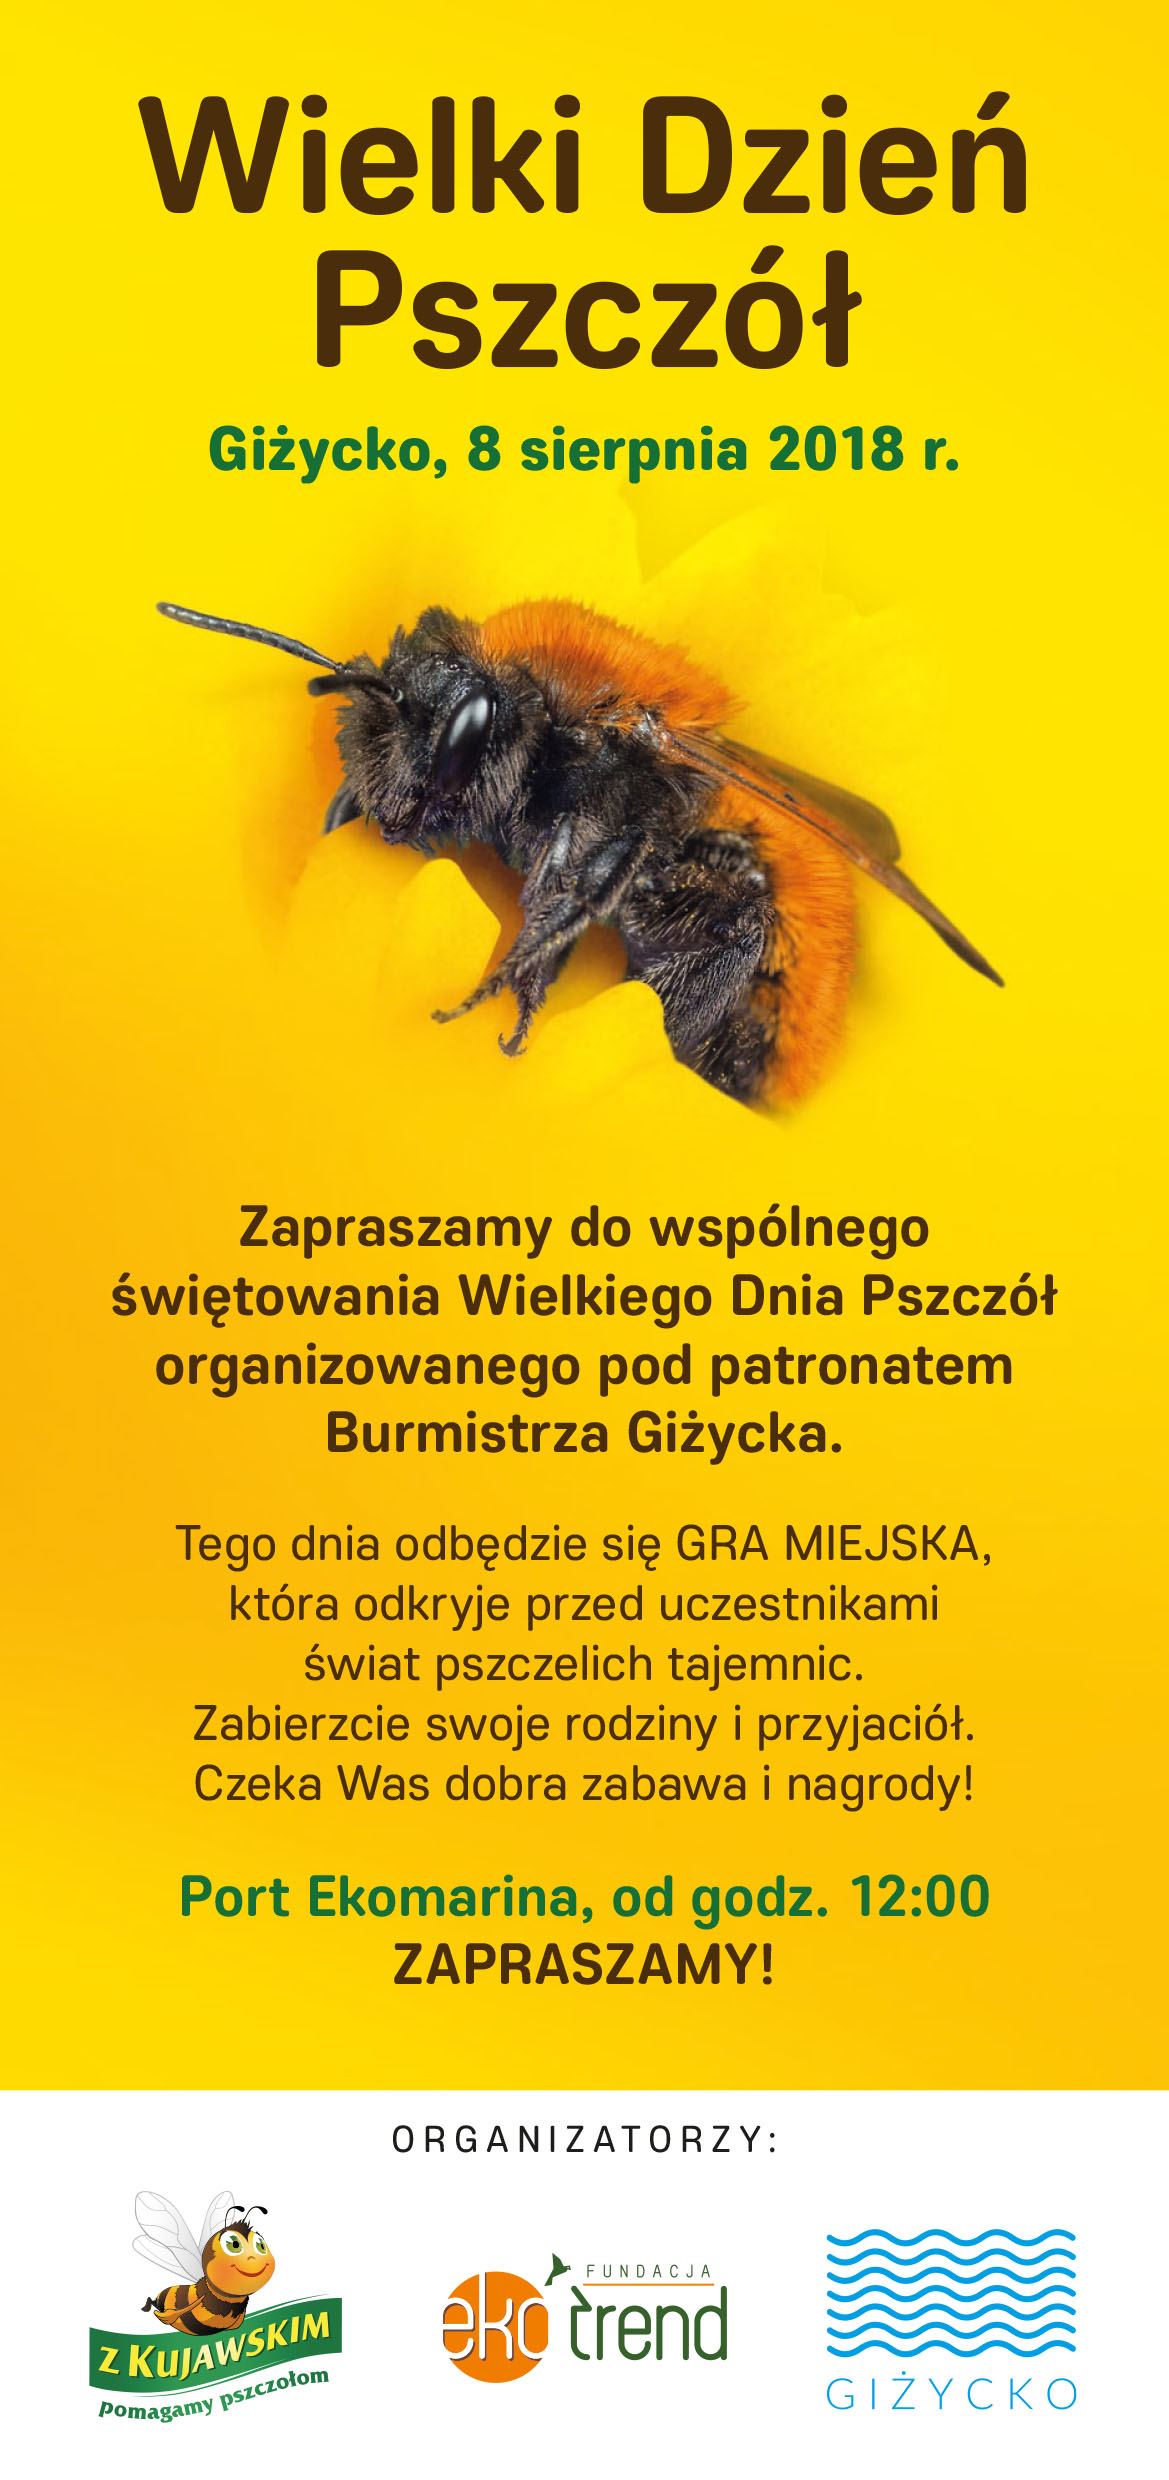 Wielki Dzień Pszczół - Zabawa i edukacja